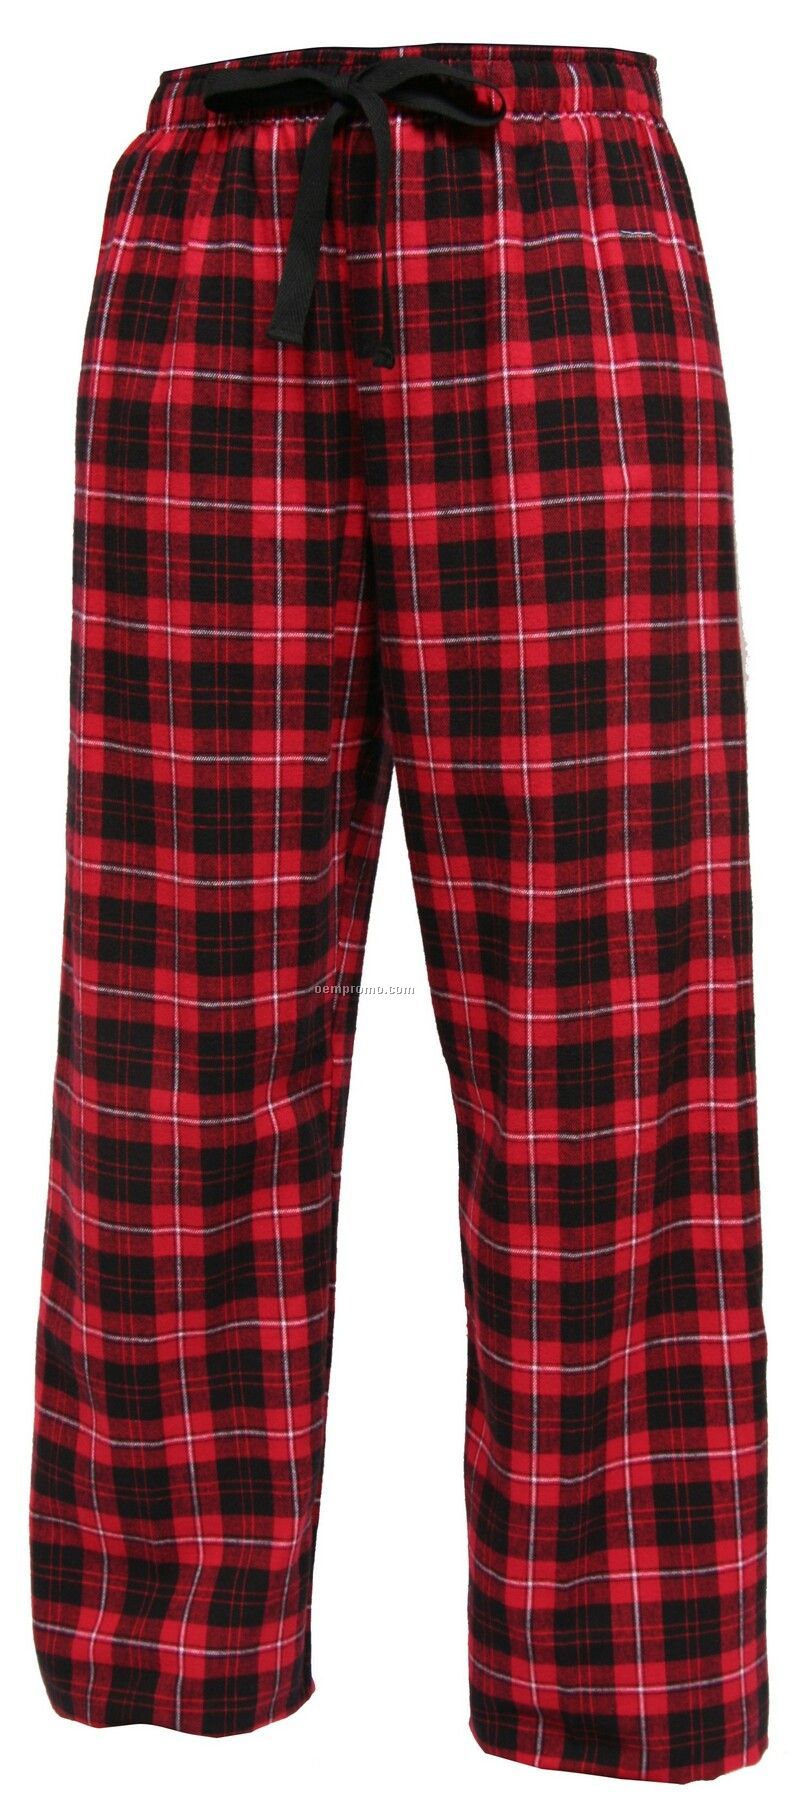 Adult Team Pride Flannel Pant In Red & Black Plaid